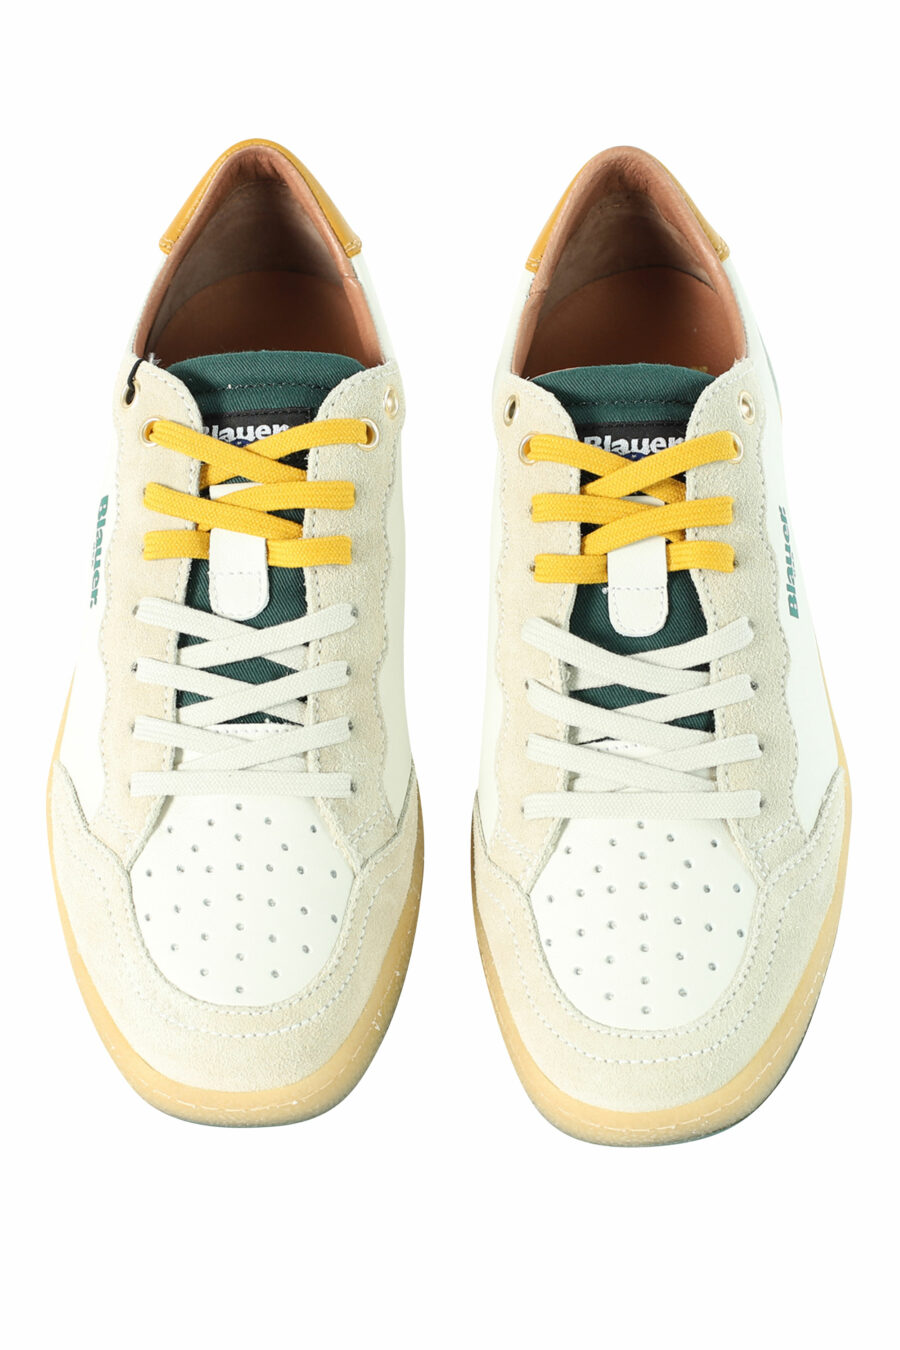 Zapatillas "MURRAY" blancas con detalles verdes y amarillos - Photos 3039